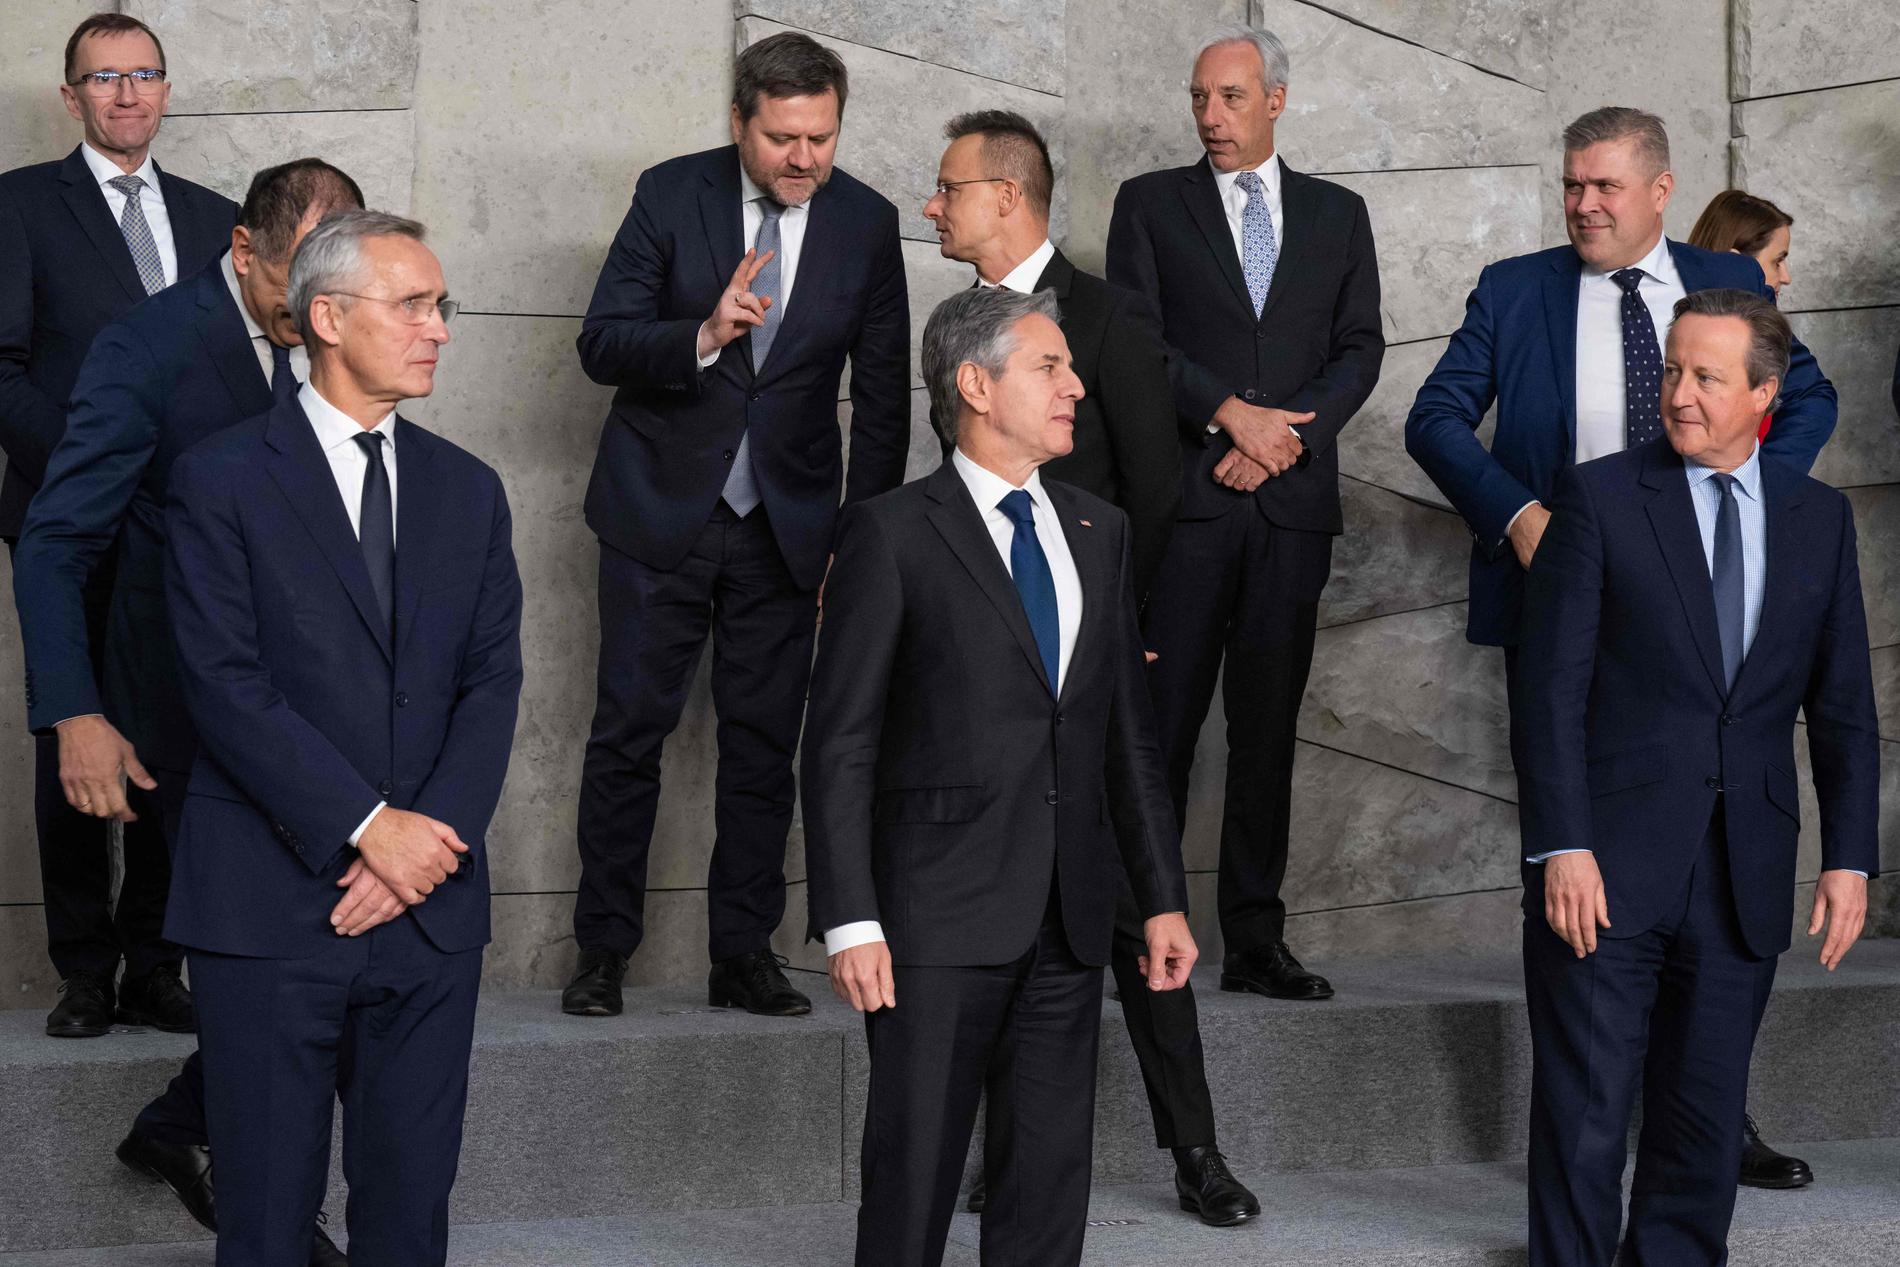 LA PHOTO DE FAMILLE : Le nouveau ministre britannique des Affaires étrangères David Cameron (à droite) a été placé au premier rang avec son collègue américain Antony Blinken et le secrétaire général Jens Stoltenberg, lorsque les ministres des Affaires étrangères de l'OTAN ont posé pour une photo à Bruxelles mardi.  Espen Barth Eide est à l'arrière gauche de la photo. 